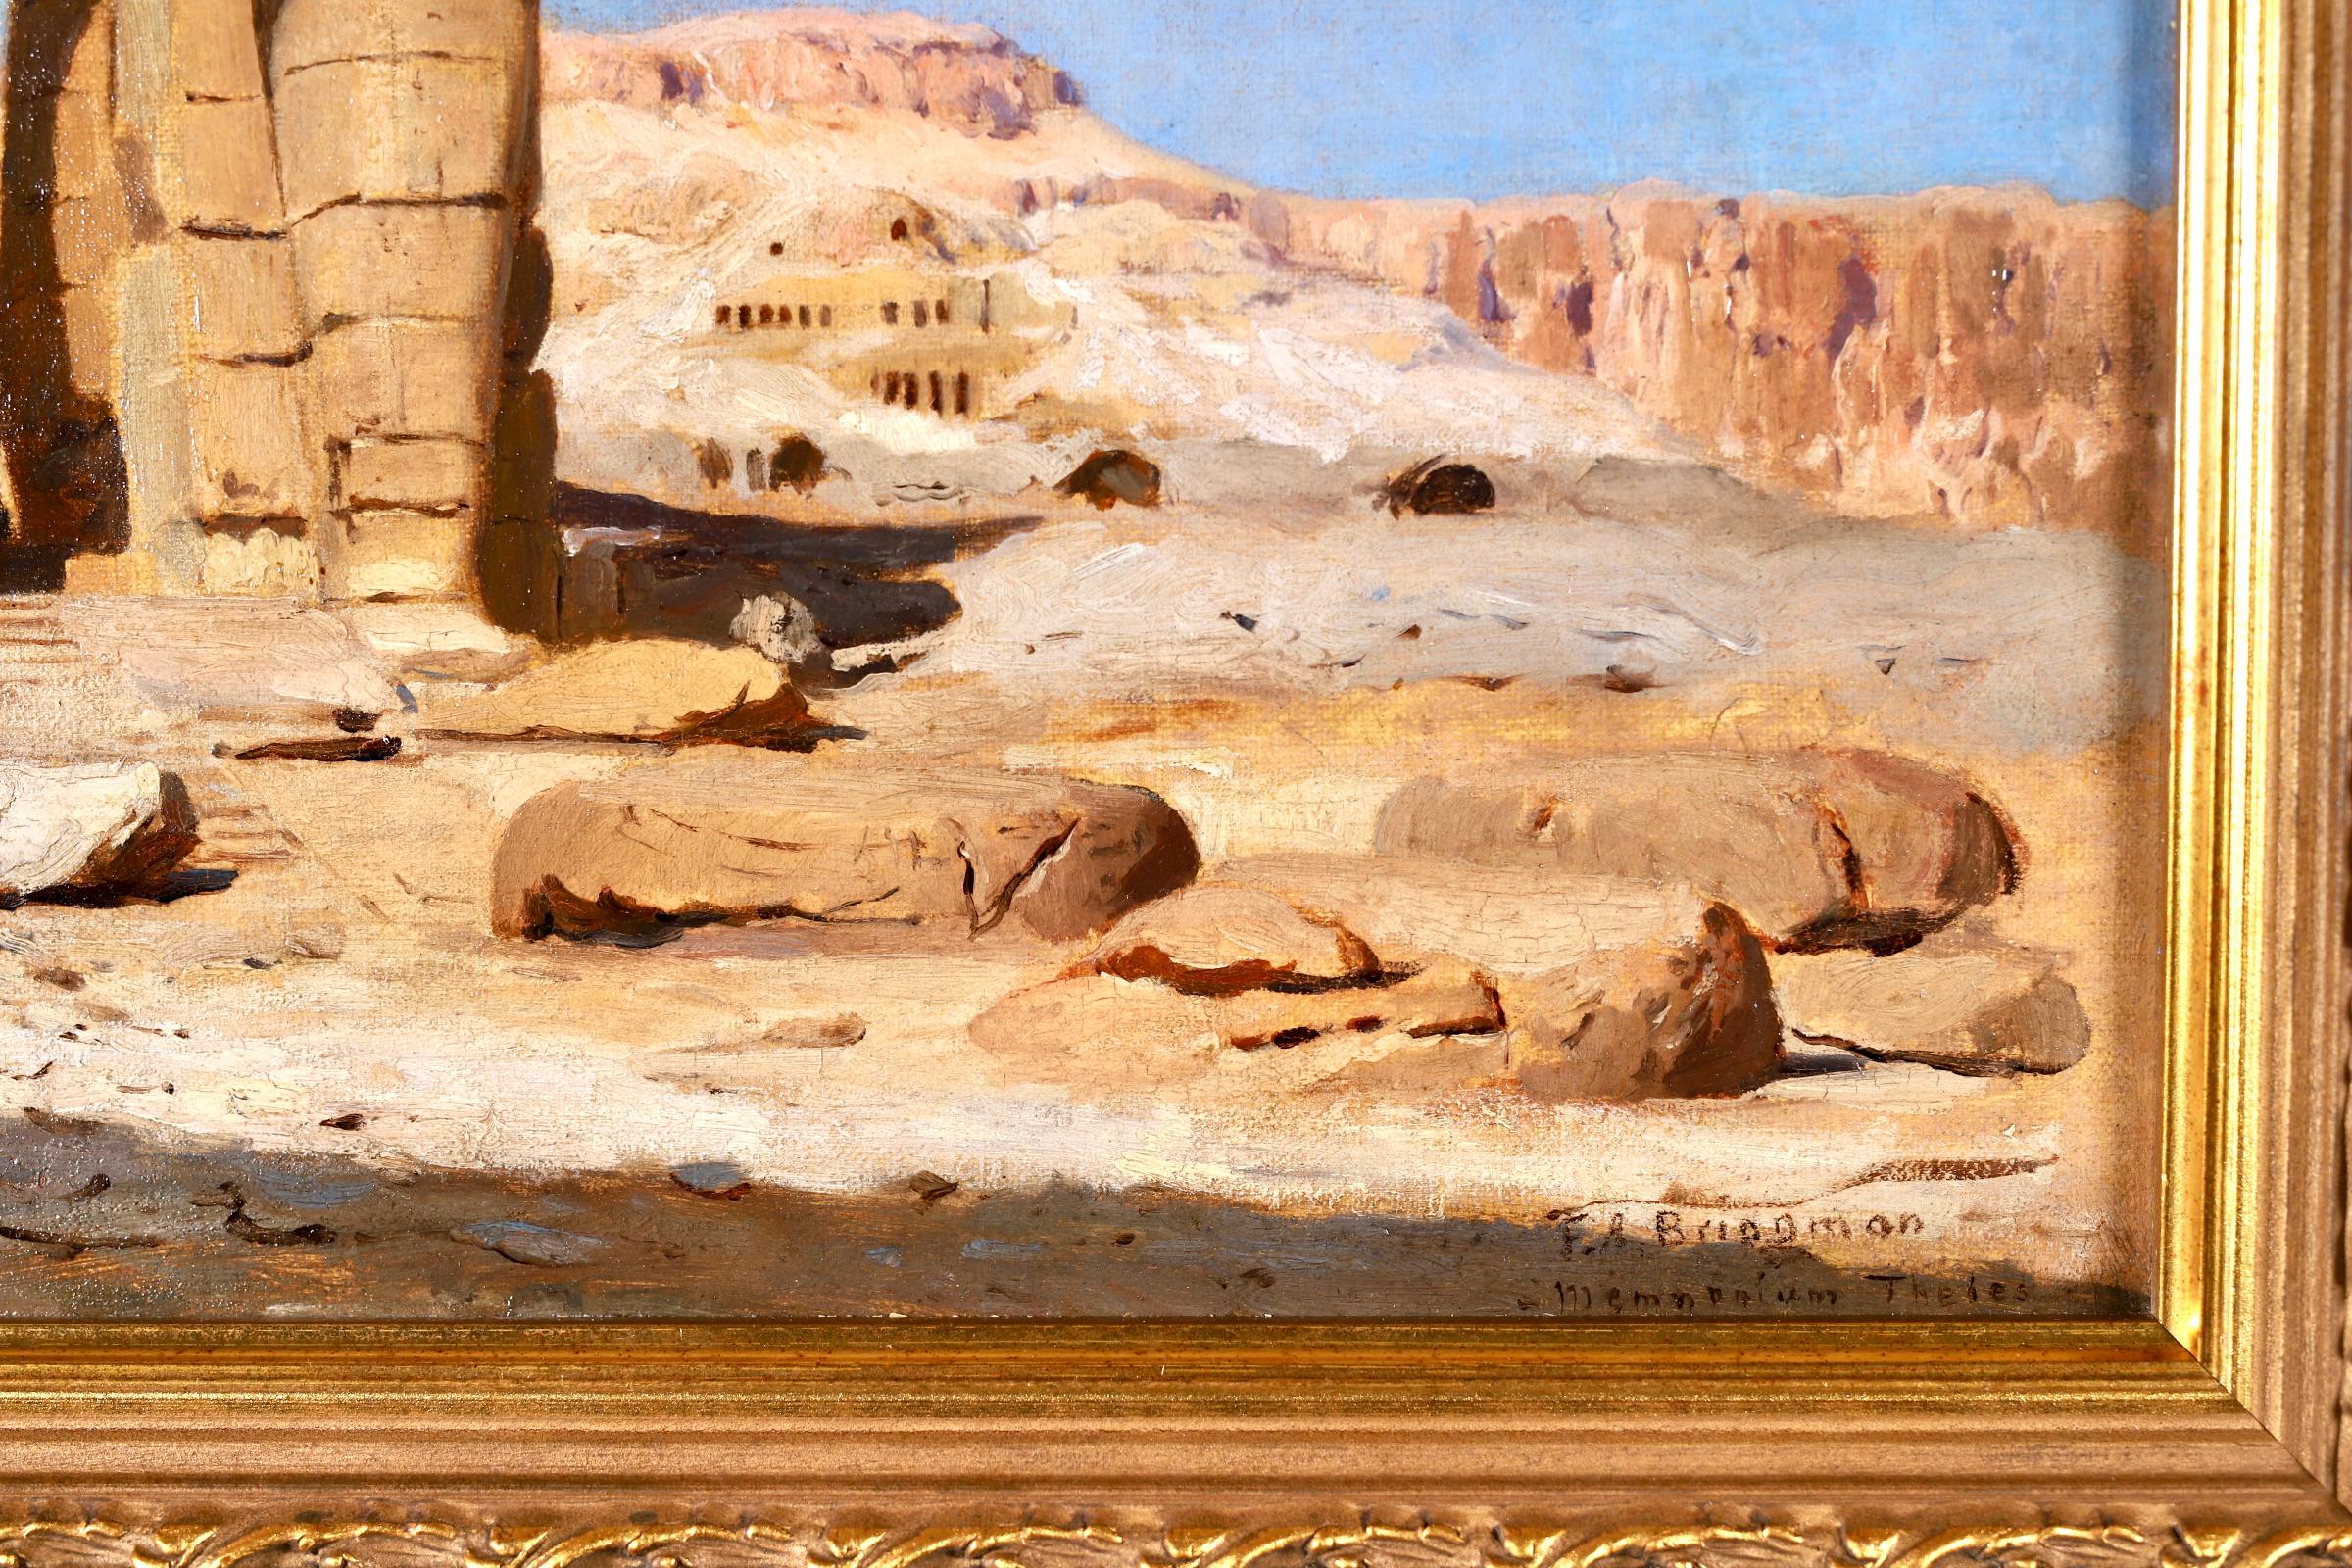 Colossi of Memnon, Egypt - Orientalist Landscape Oil - Frederick Arthur Bridgman 4